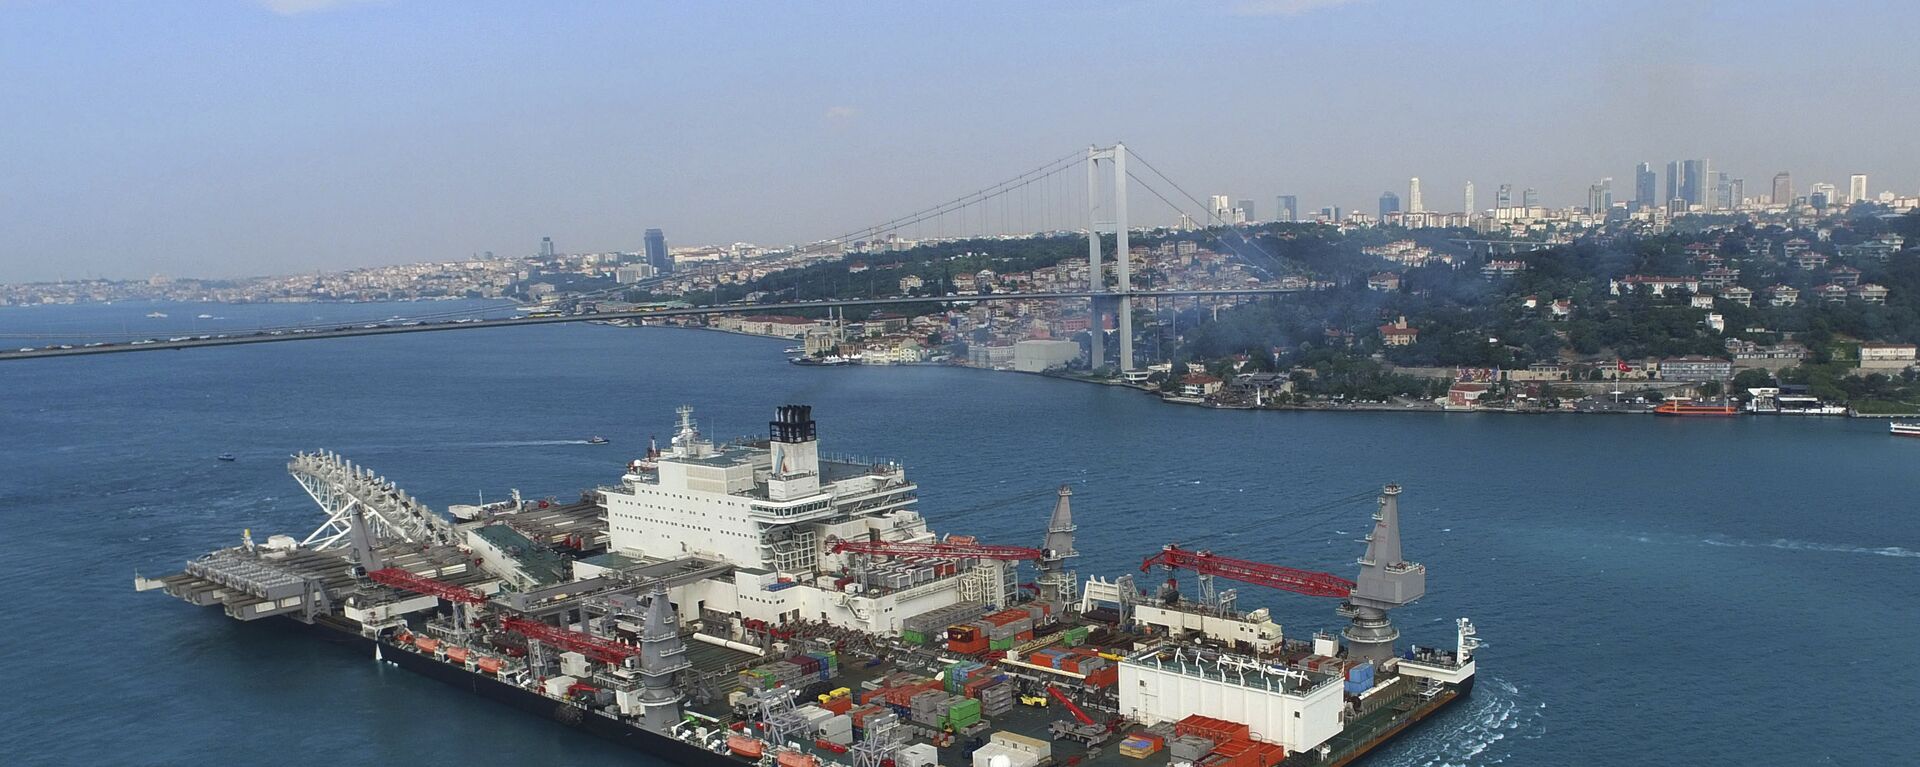 The 'Pioneering Spirit' vessel crosses the Bosphorus Strait in Istanbul, Wednesday, May 31, 2017 - Sputnik International, 1920, 05.04.2021